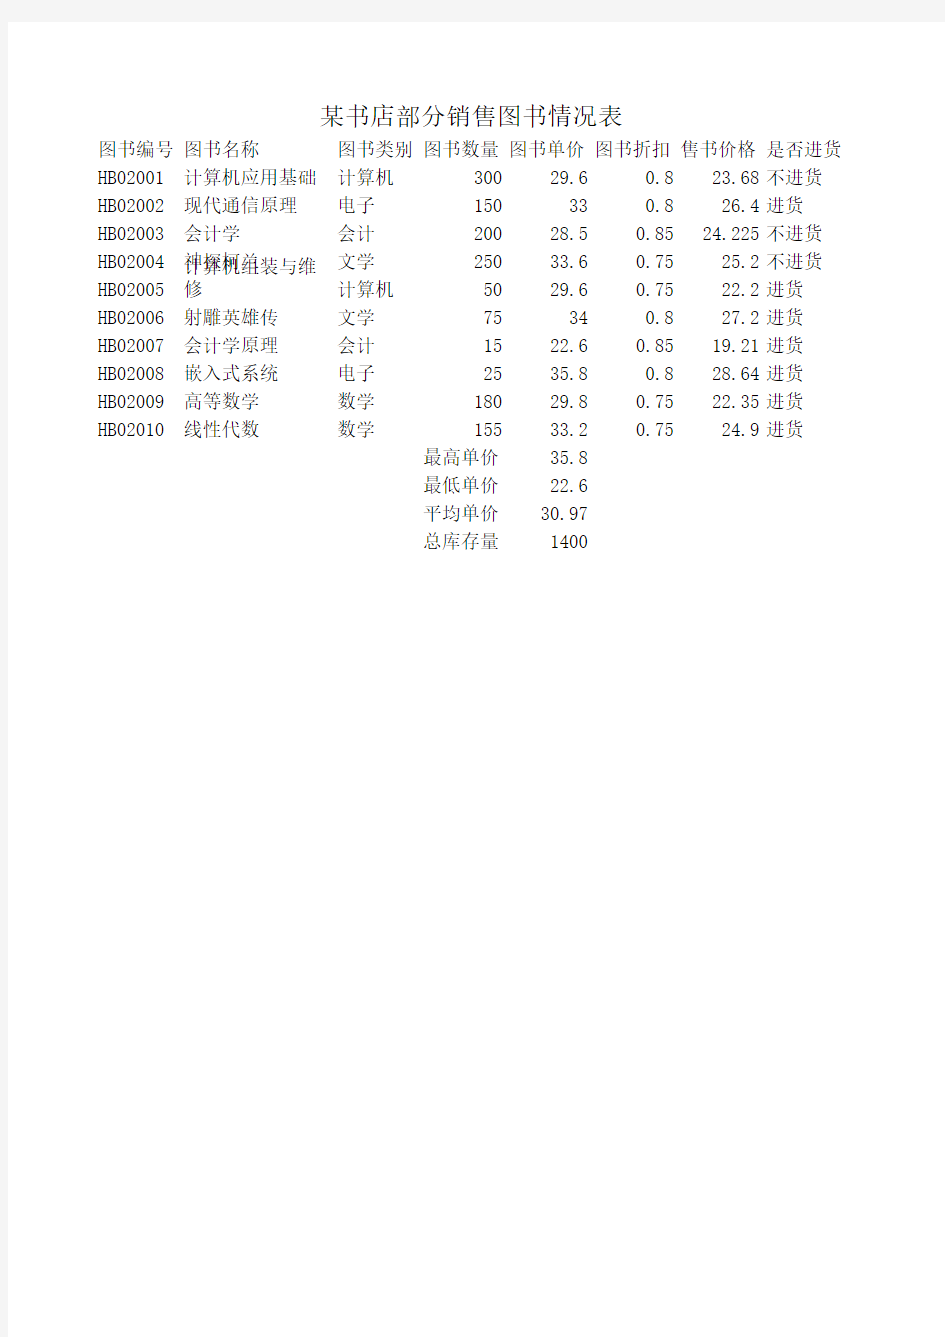 数据处理Excel 2010(实验)图书销售情况表